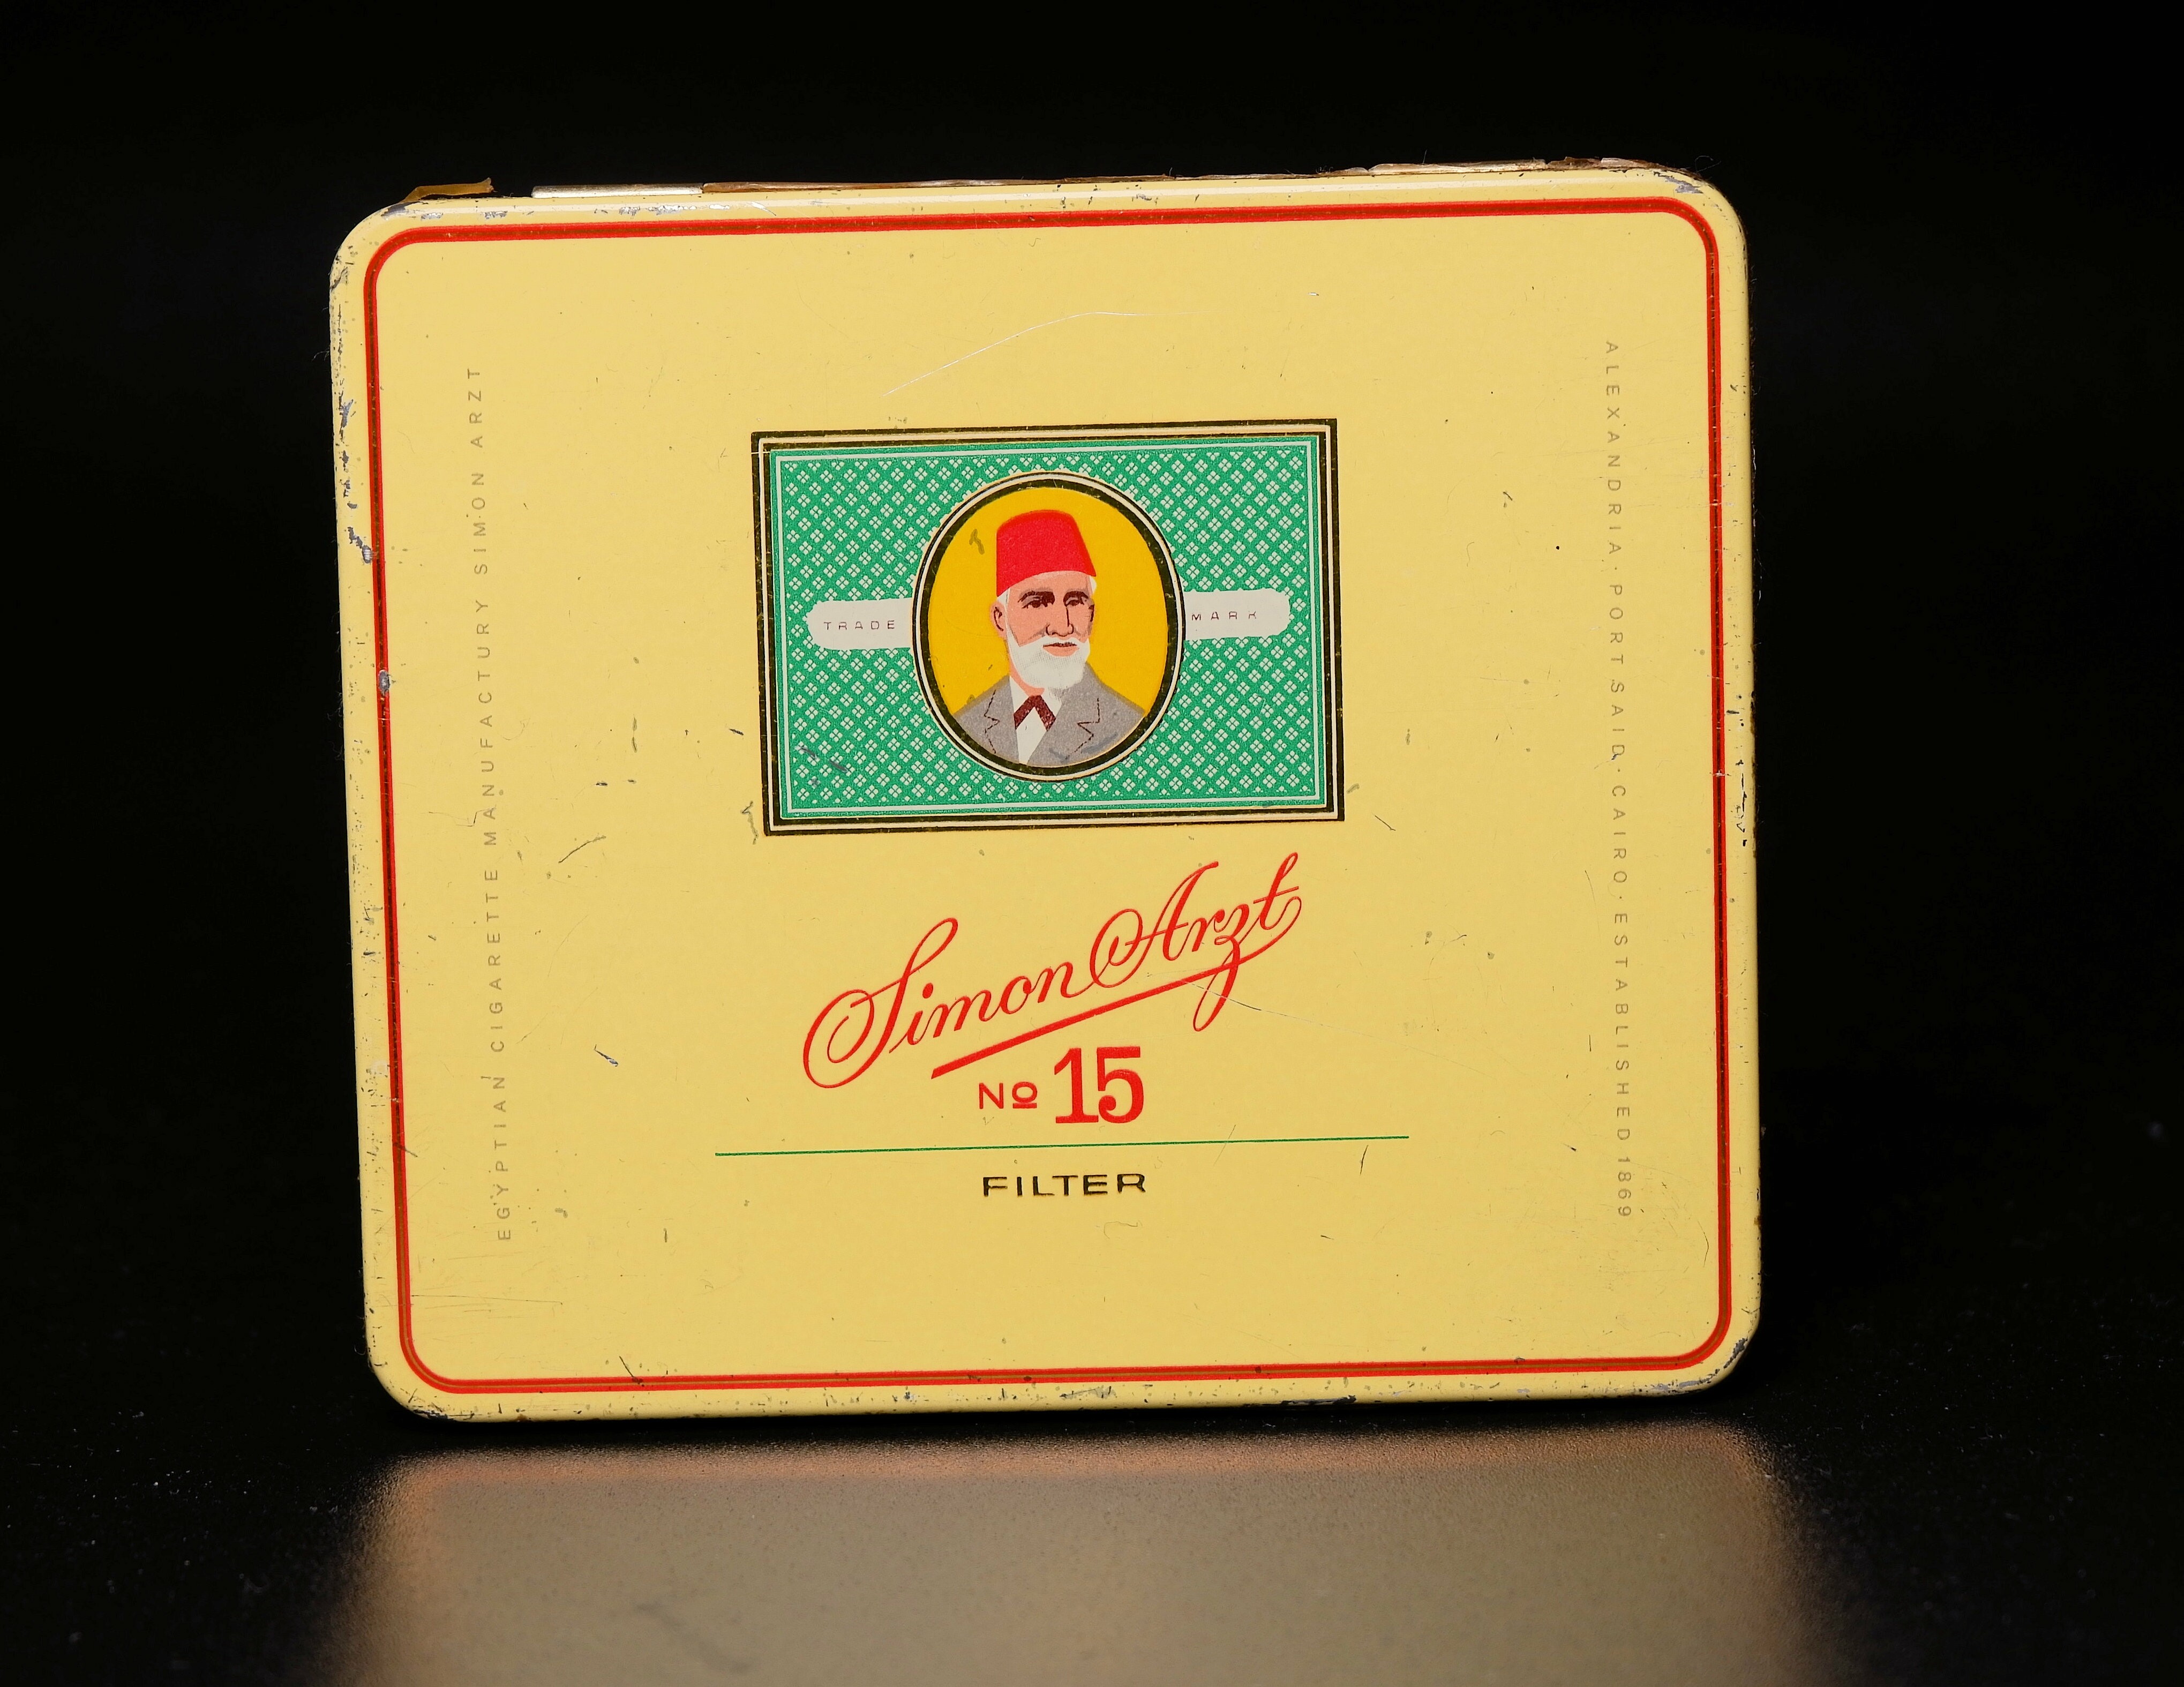 Zigarettenmarke	"Simon Arzt No 15 Filter" 20er Blechpackung (Volkskunde- und Freilichtmuseum Roscheider Hof CC0)